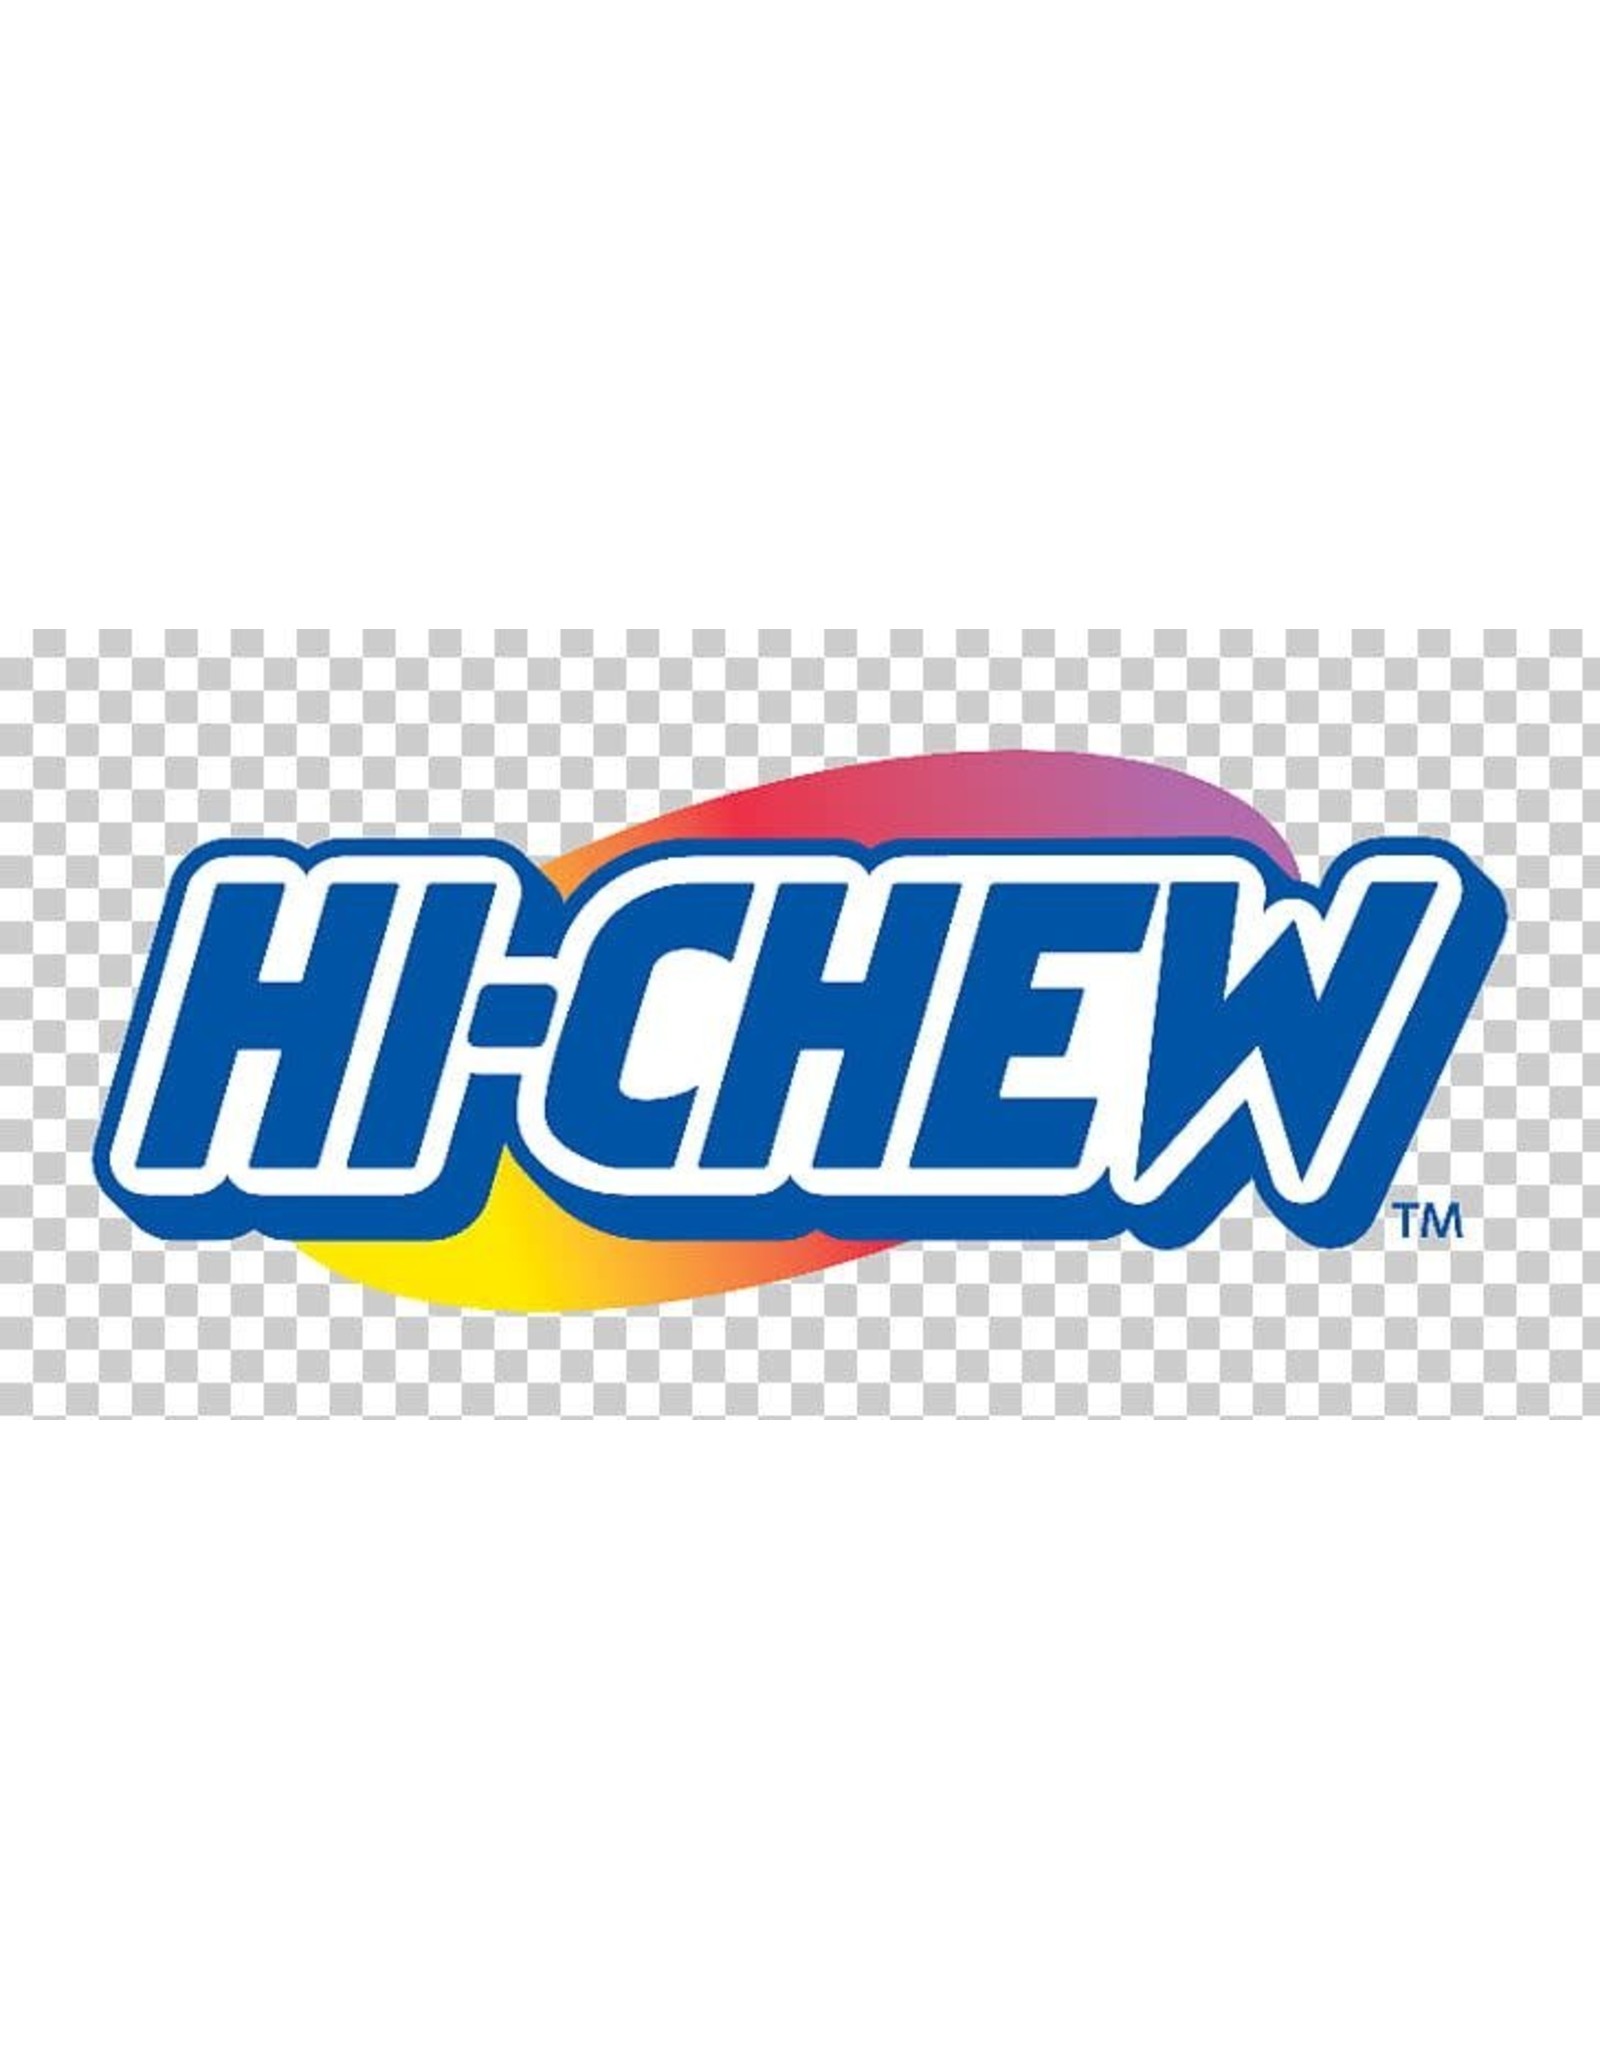 HICHEW HI-CHEW